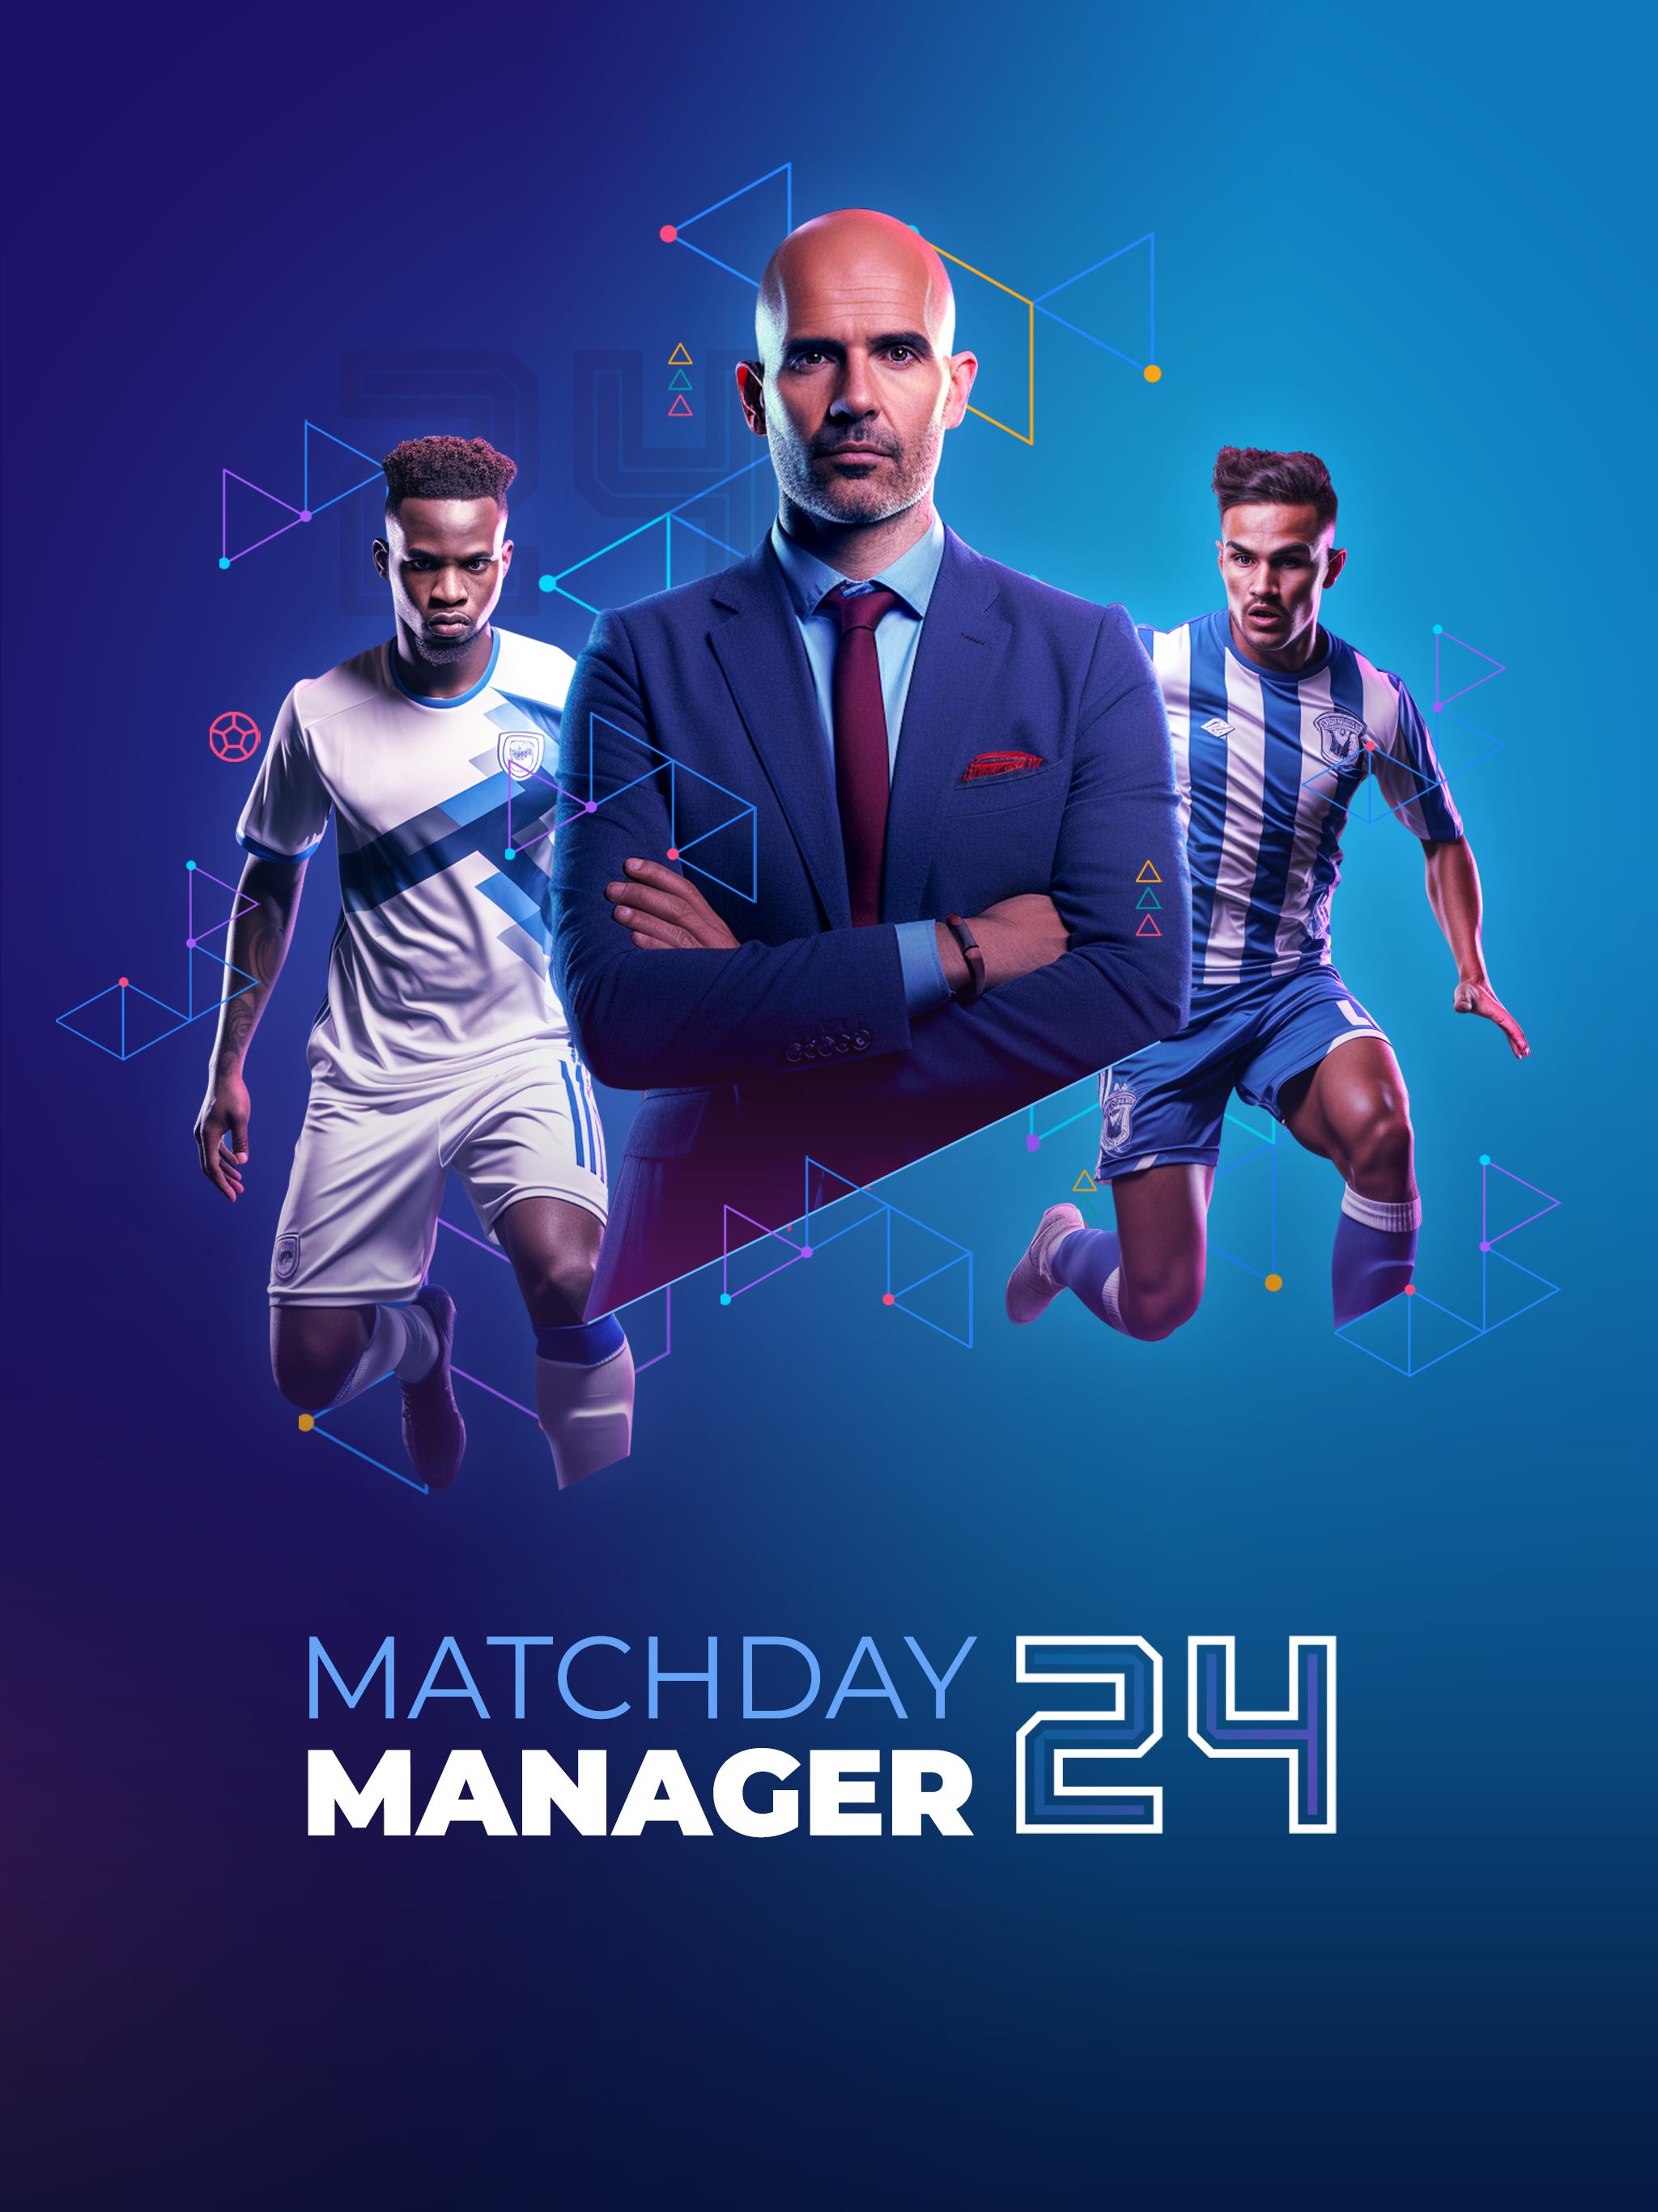 Soccer - Matchday Manager 24 Screenshot 16